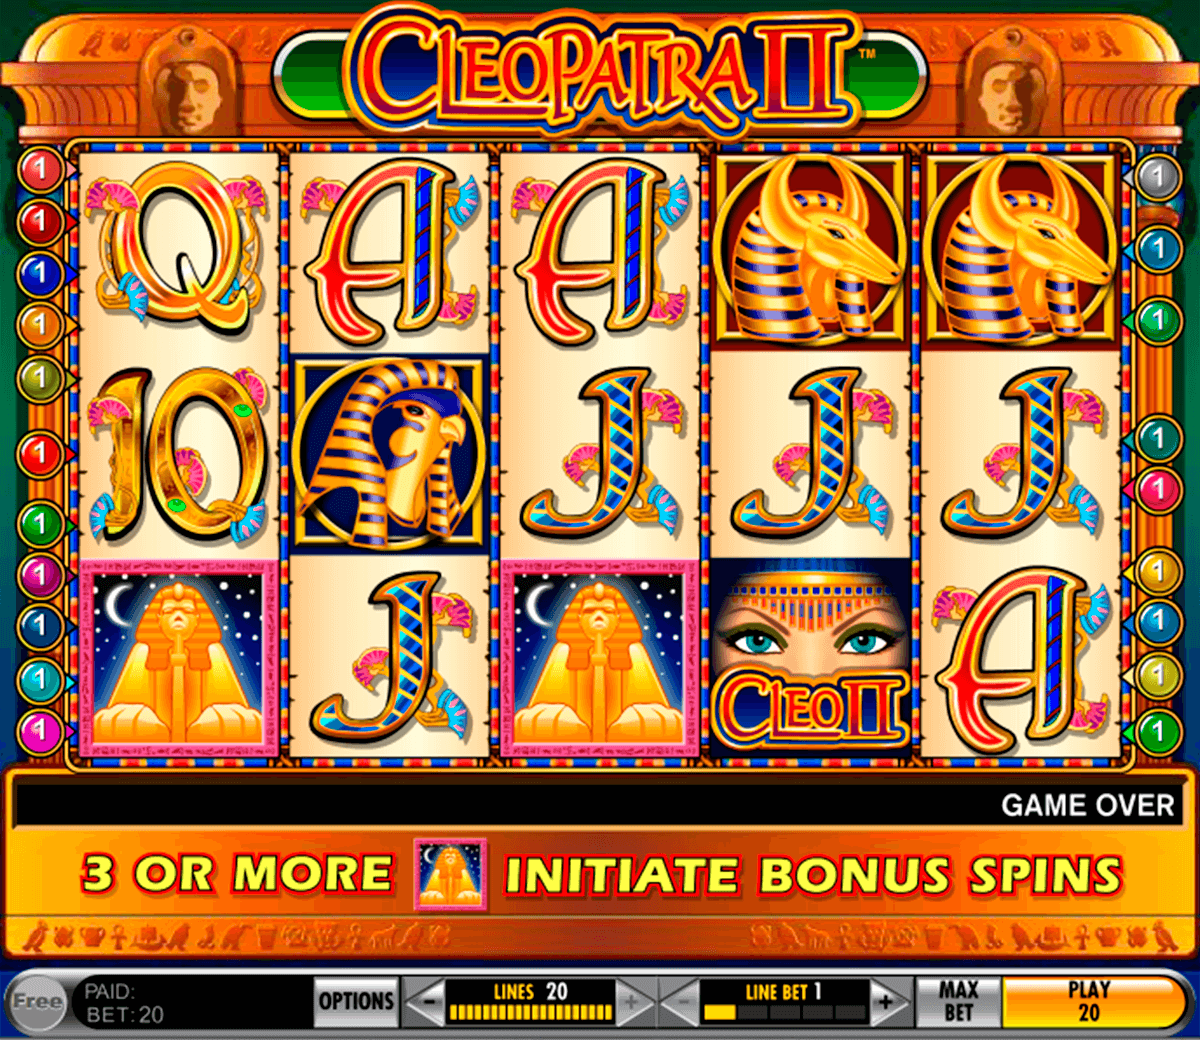 Máquinas Tragamonedas Gratis ✓ Juegos en Casinos en línea